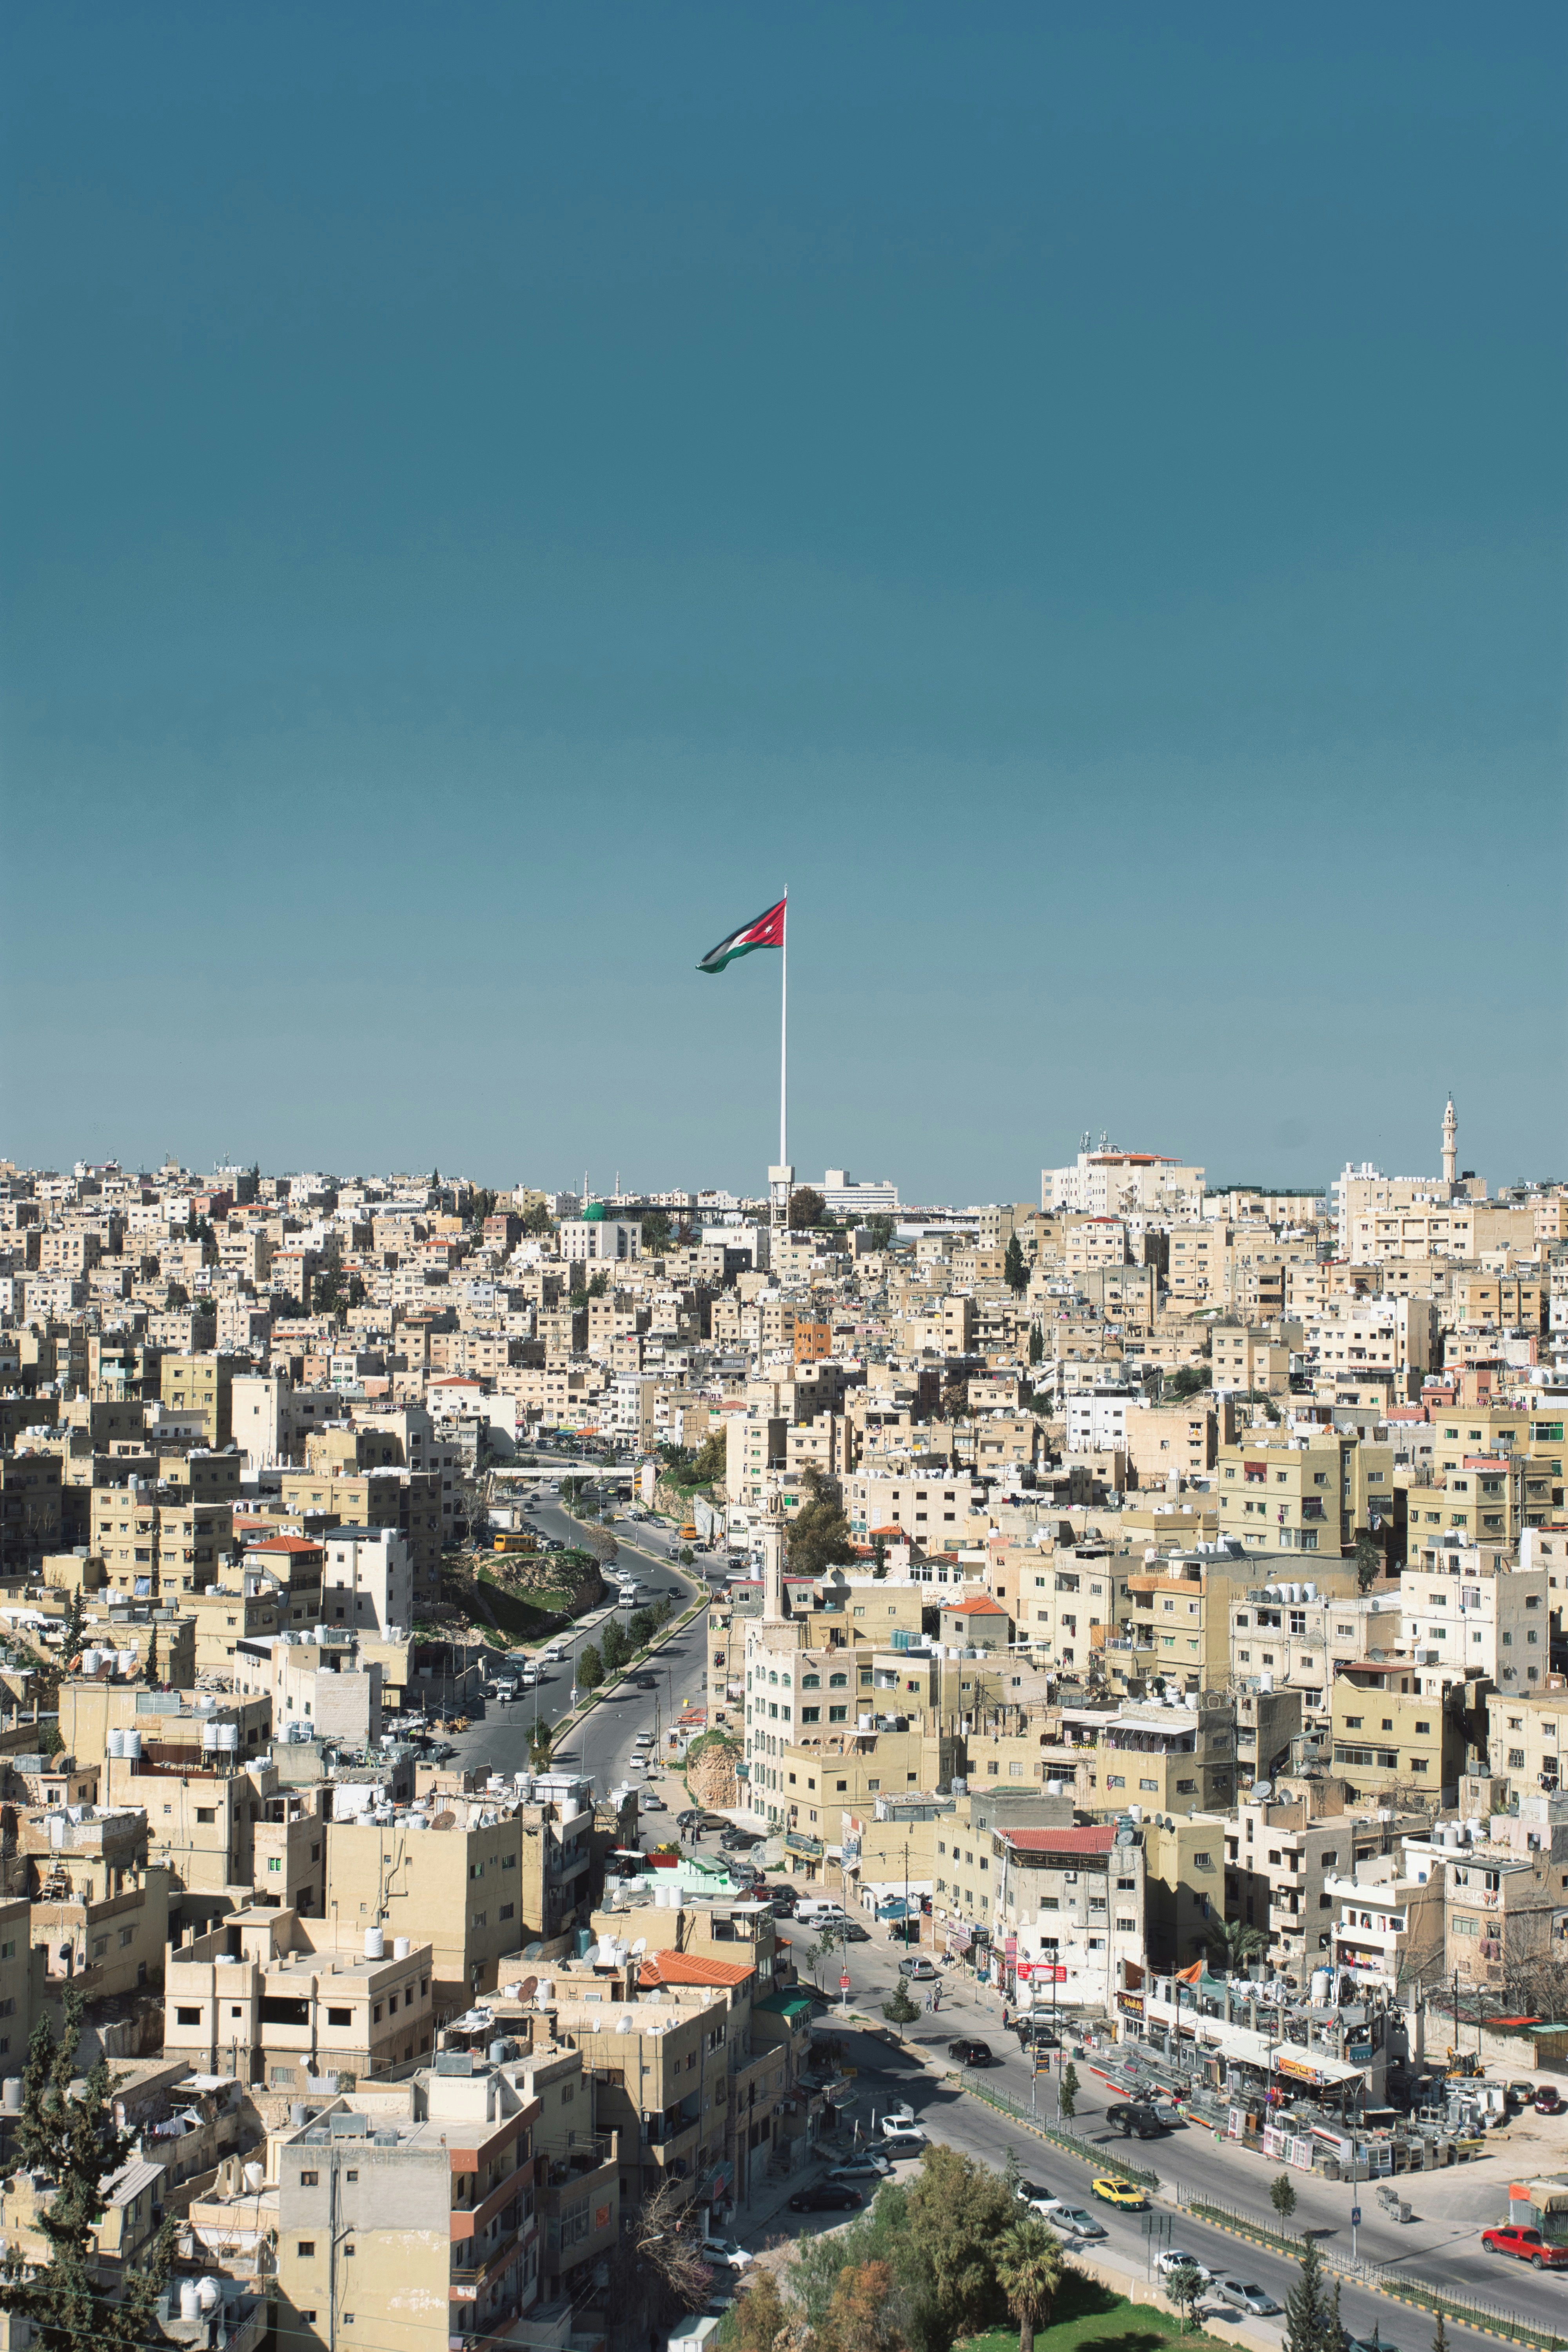 A large Jordanian flag flies over a neighbourhood in Amman, Jordan.